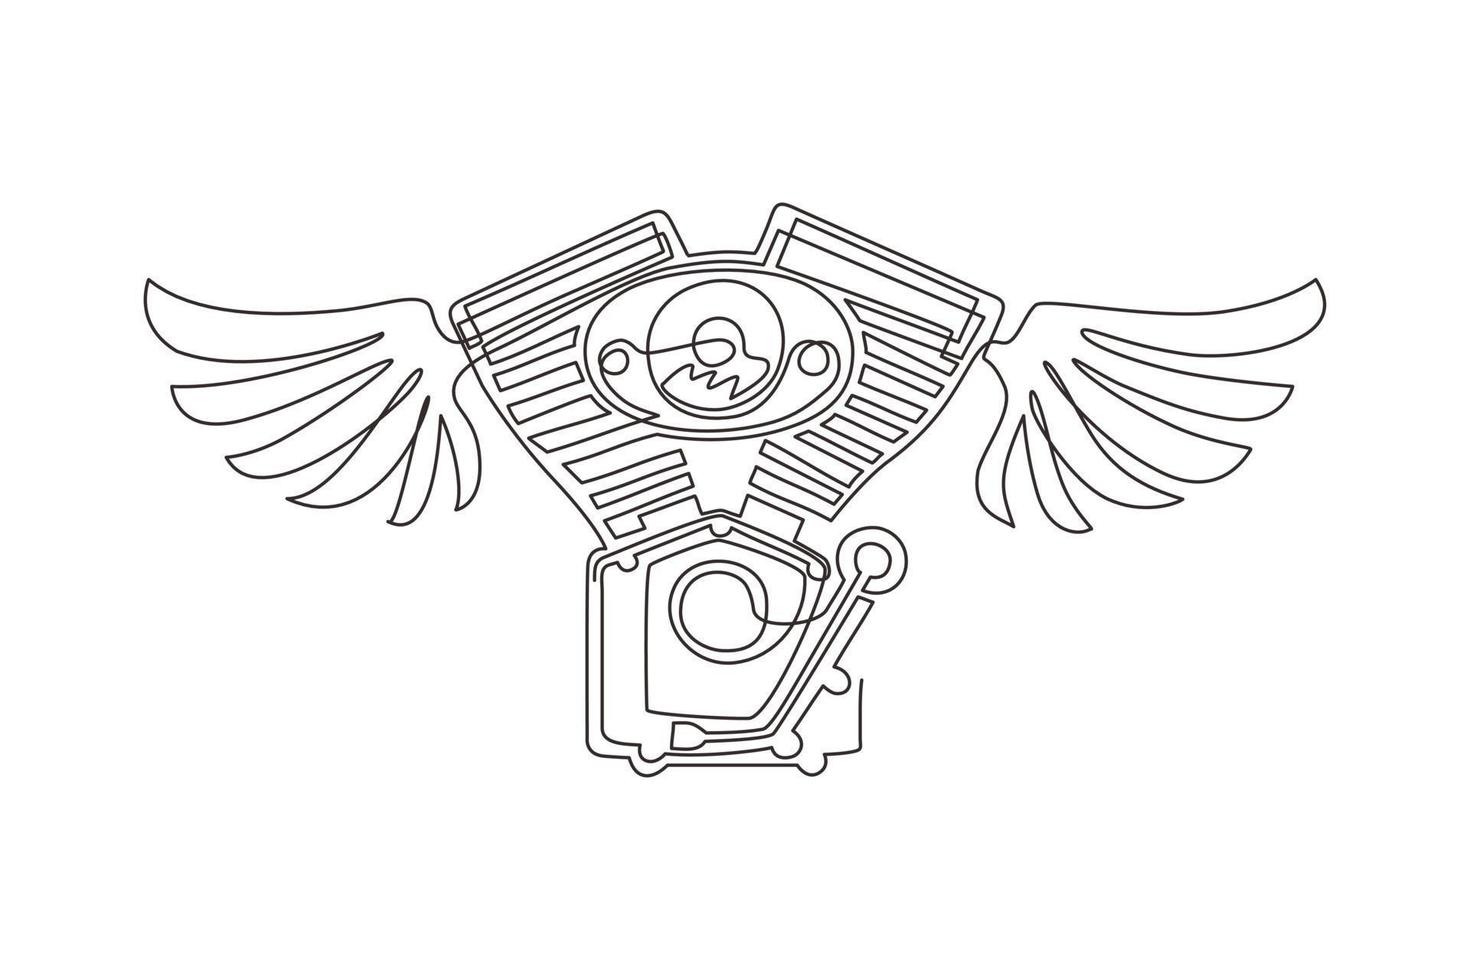 logo du club de moto de dessin en ligne continue avec moteur et ailes, logo du club de motards, icône de service de motos personnalisées. moteur de moto avec des ailes. dynamique une ligne dessiner vecteur de conception graphique